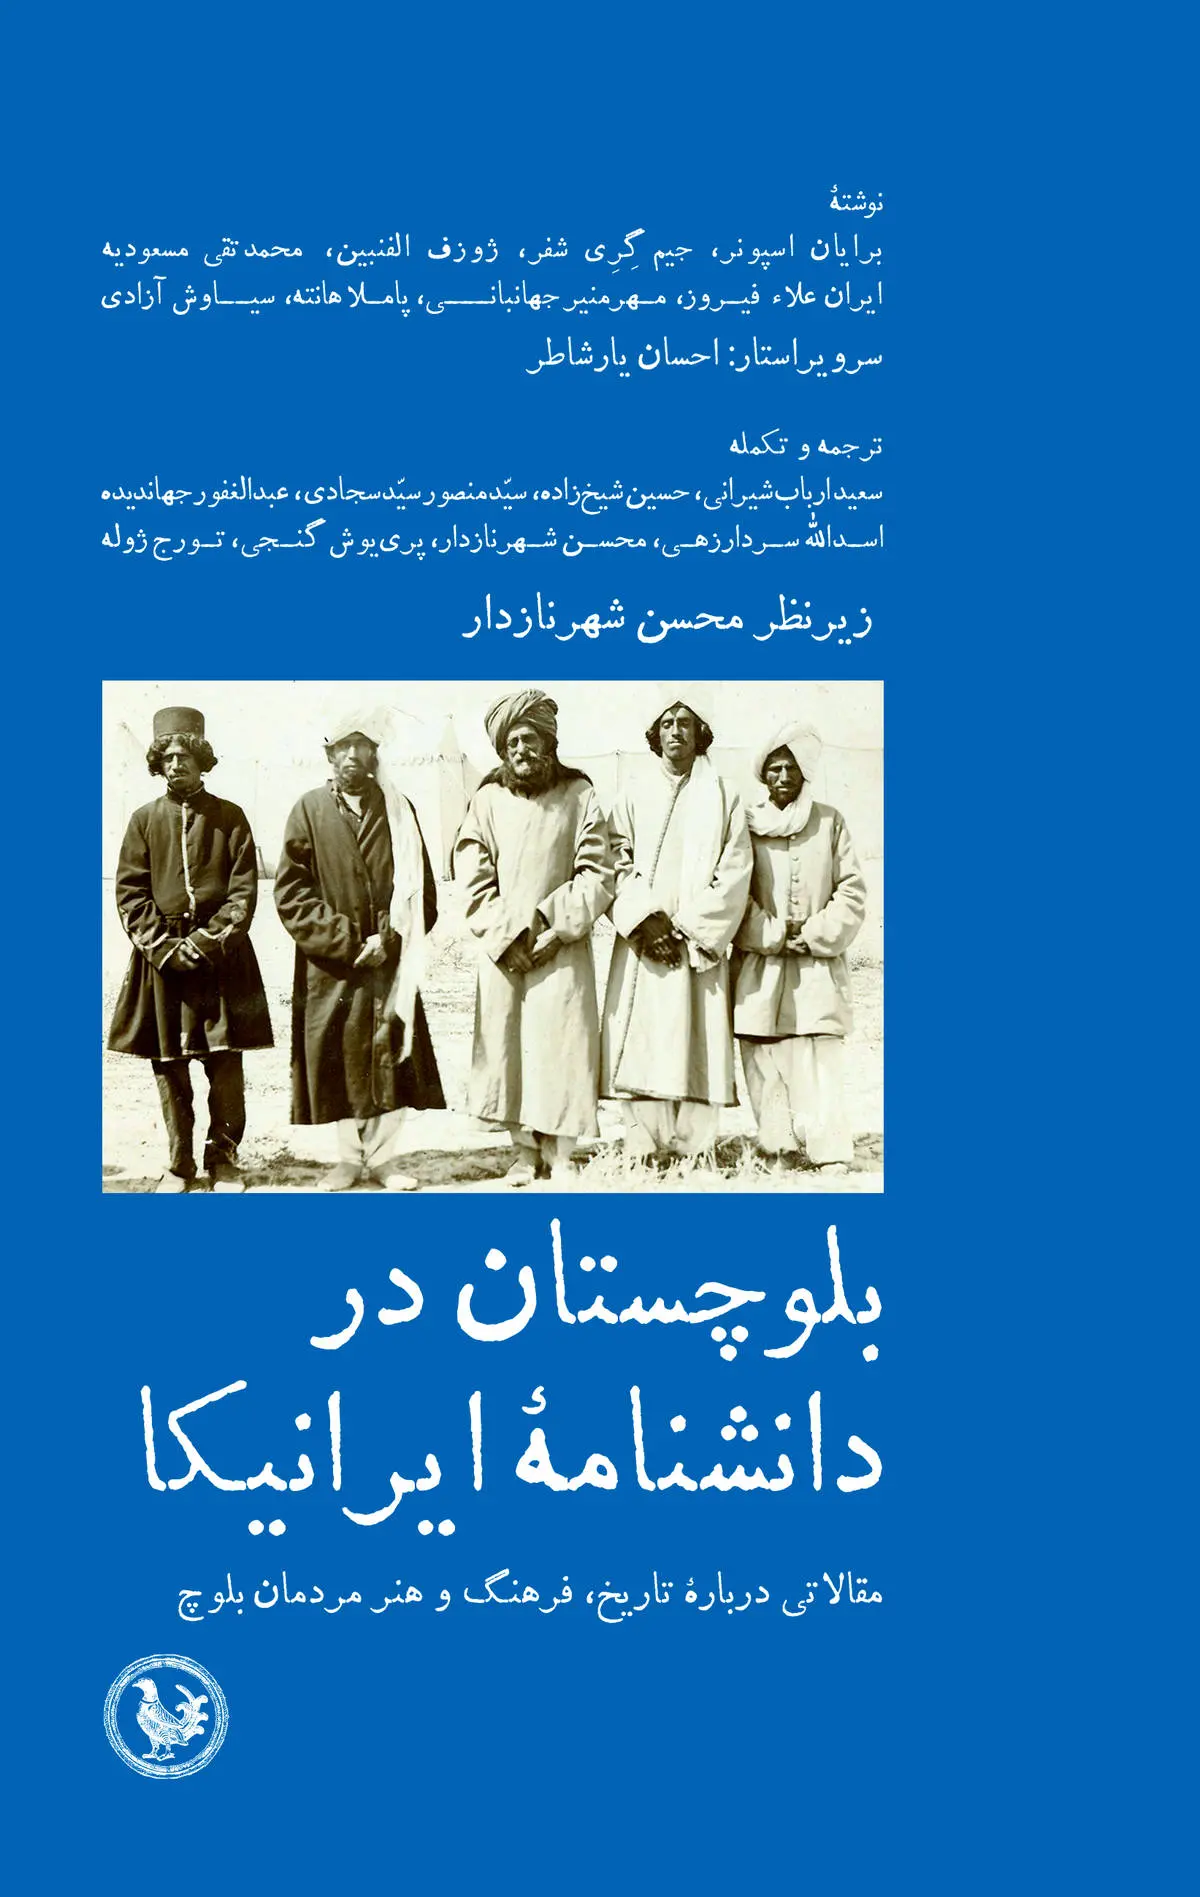 بلوچستان در دانشنامه ایرانیکا
